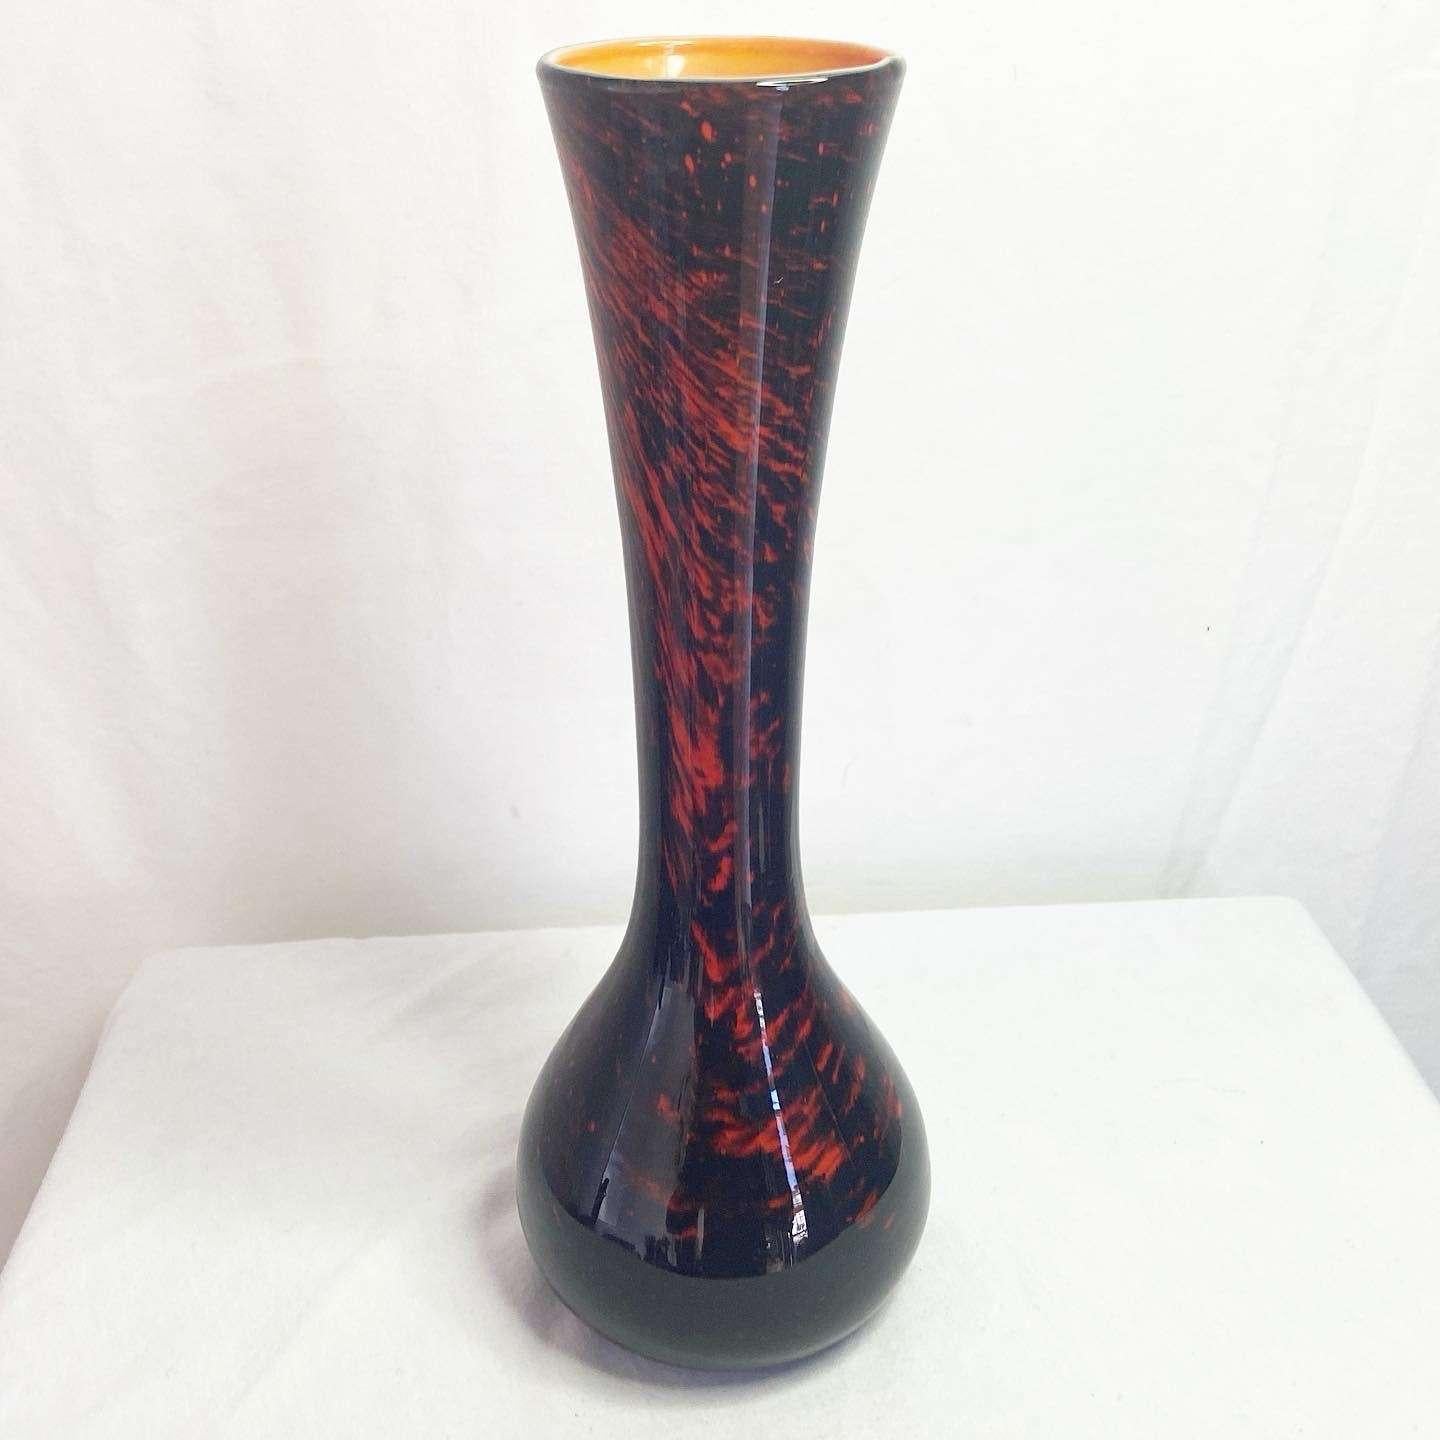 Superbe vase en verre vintage. Affiche un dos en verre rouge à l'extérieur et orange à l'intérieur.
